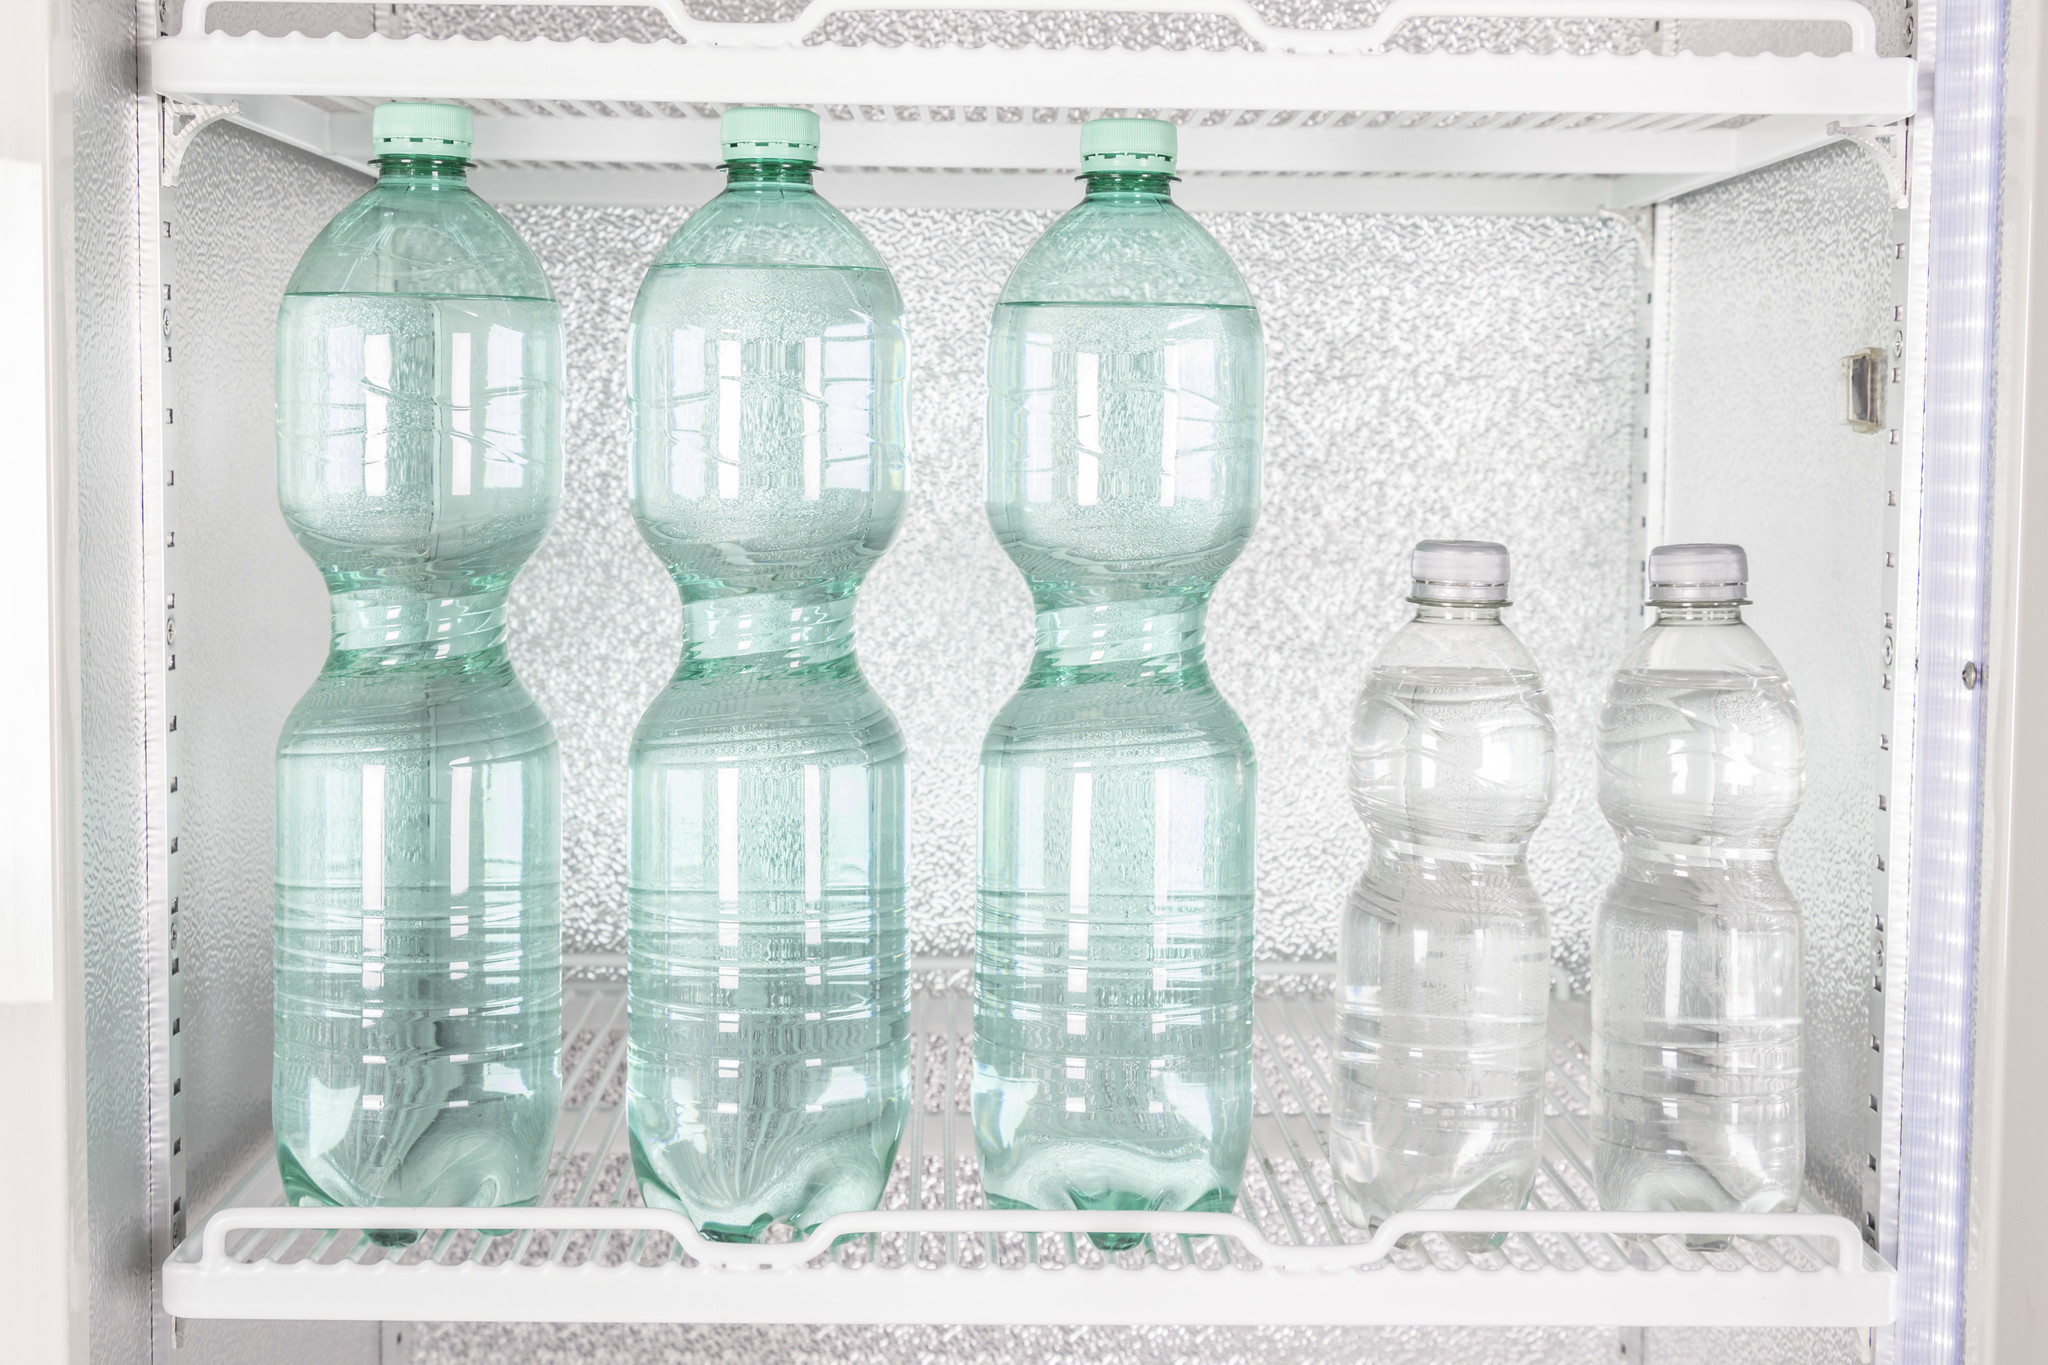 Kühlschrank mit Glastür | C5PROZZ-H-HU | 410 Liter | 650x720x(H)1990mm